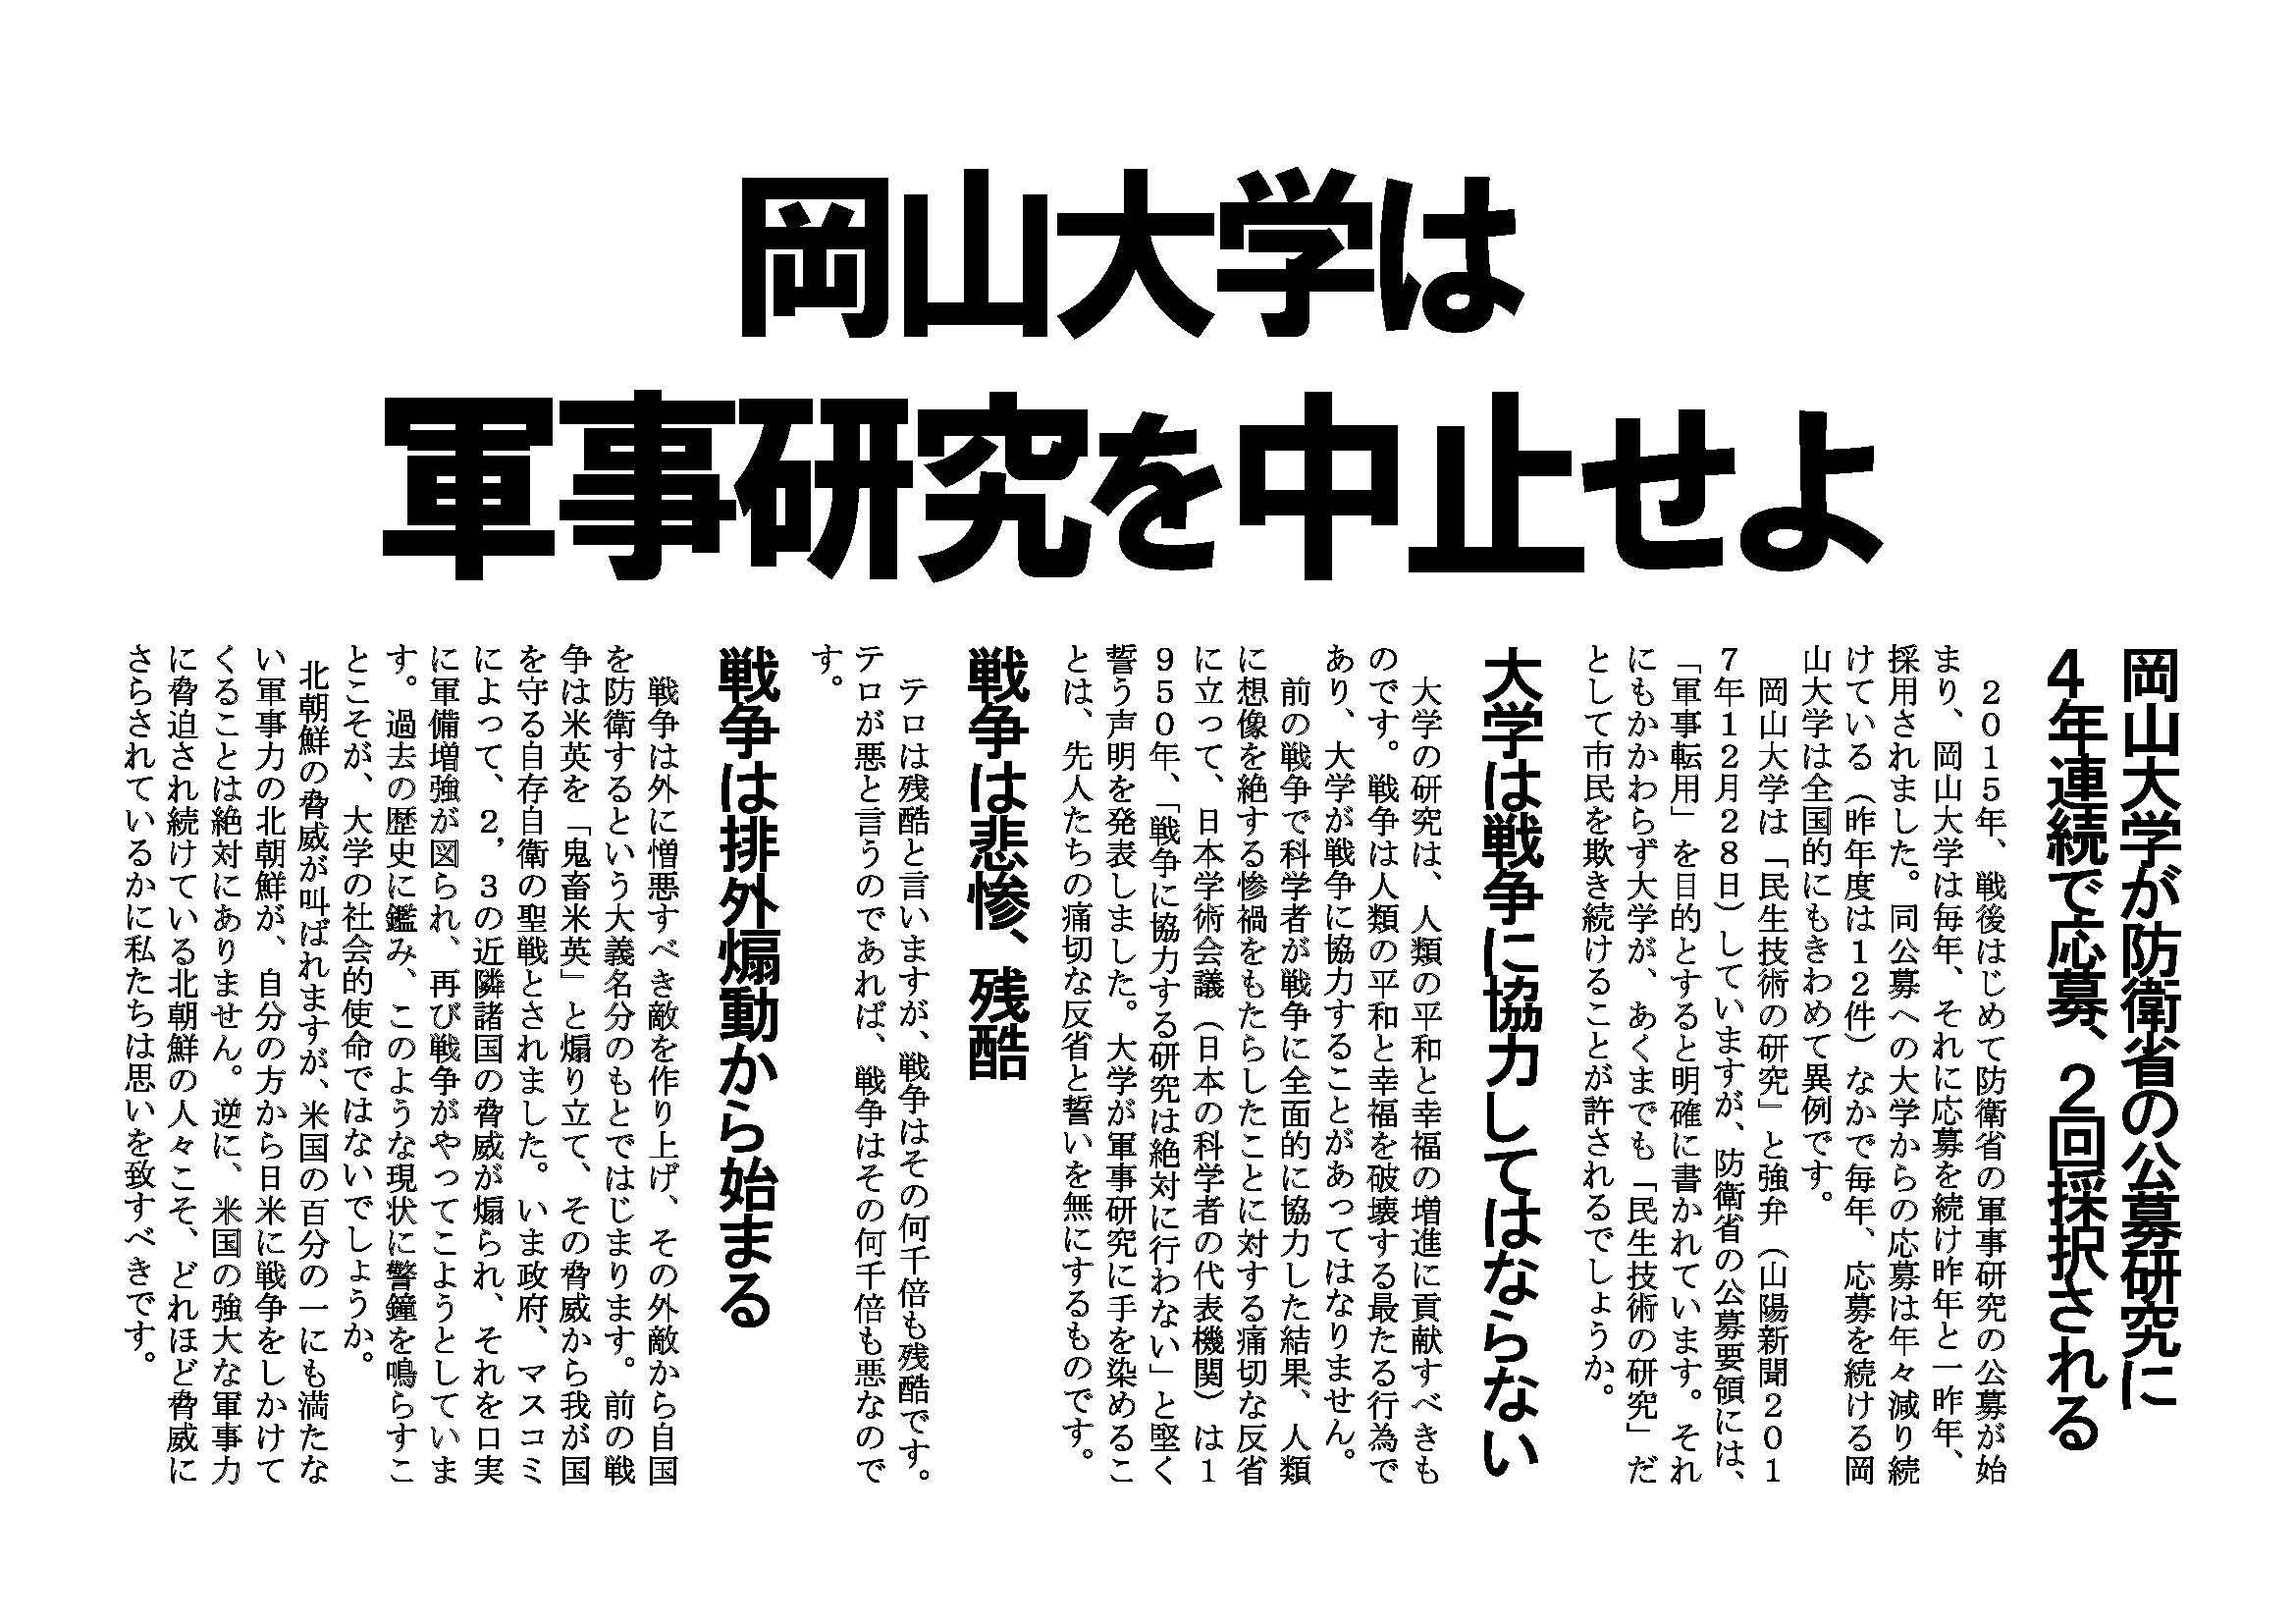 4月2日、岡山大学入学式で新入生にビラを配りました「岡山大学は軍事研究をやめよ」_d0155415_20144329.jpg